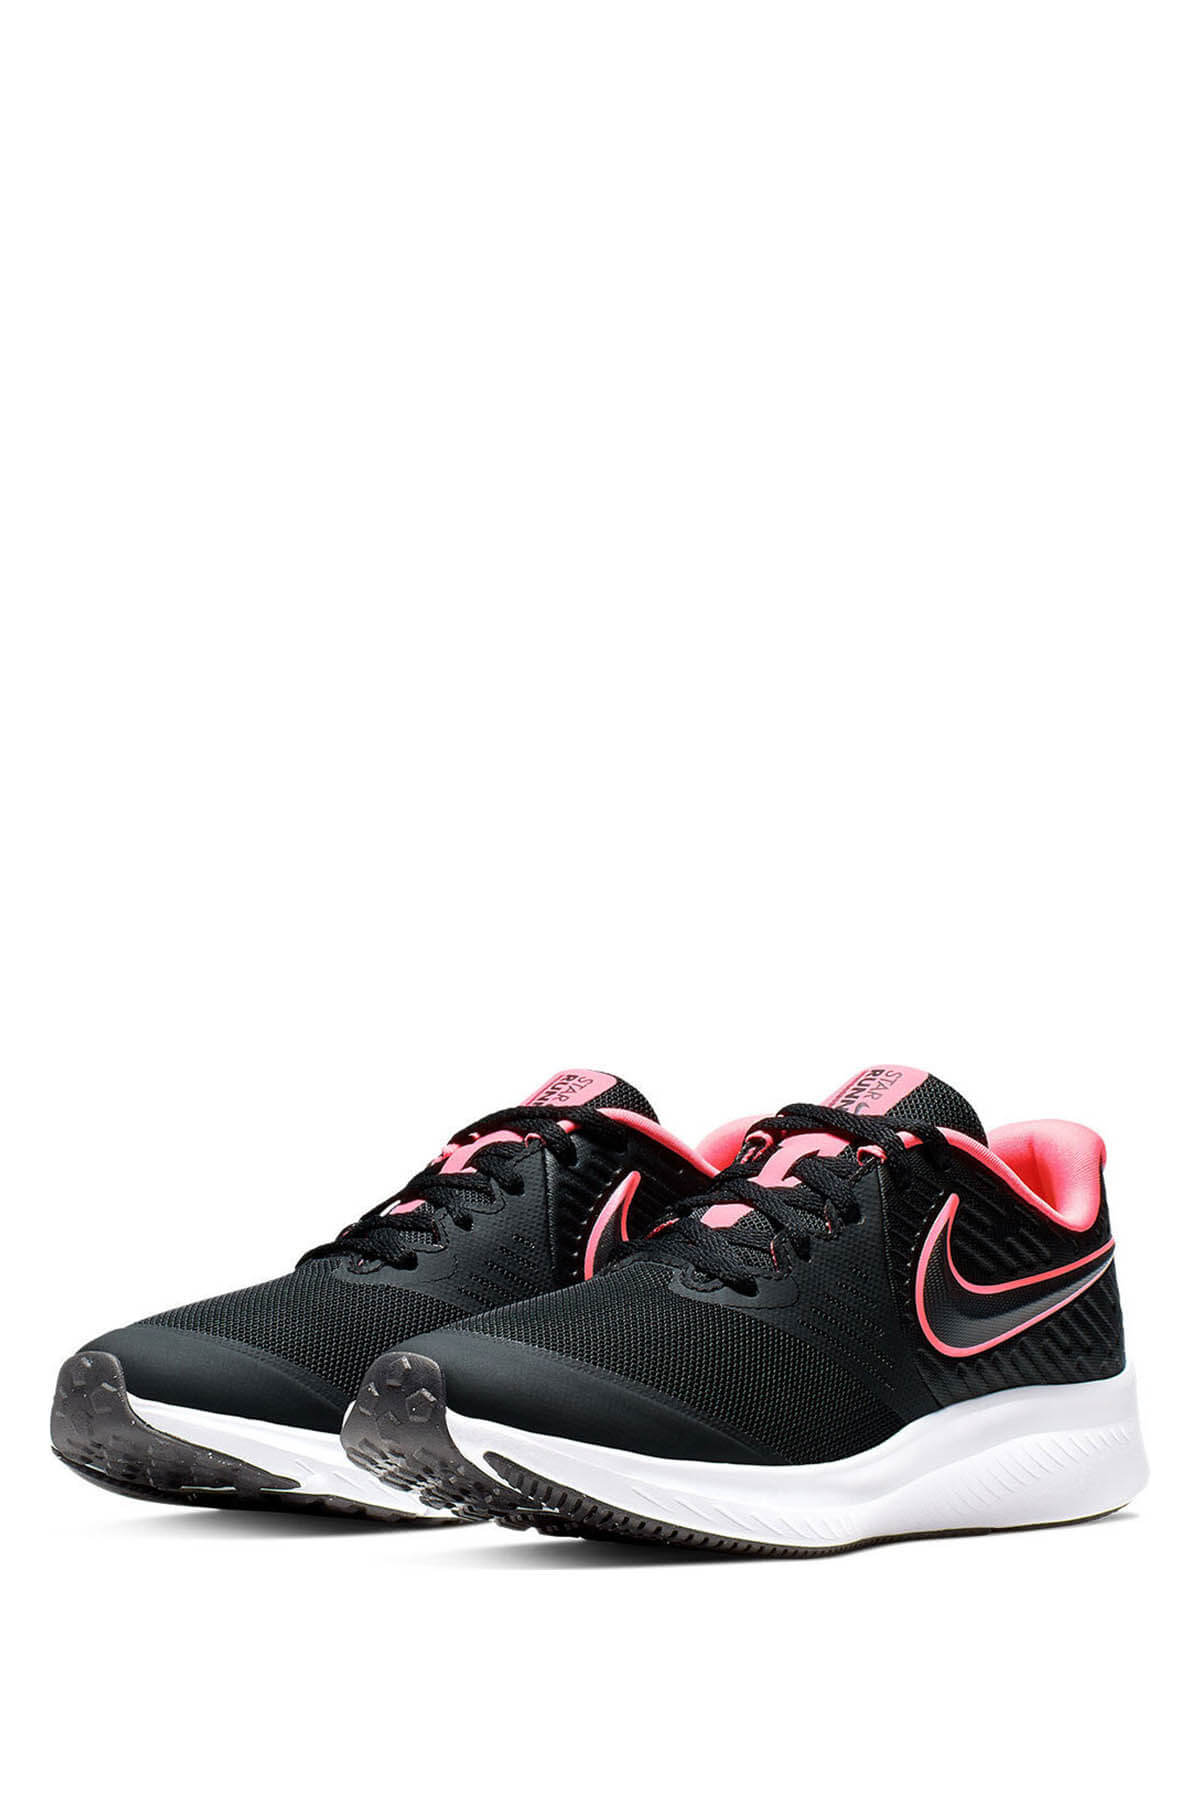 önsöz vadi Uygun  Nike STAR RUNNER 2 (GS) Kadın Koşu Ayakkabısı 100482196 | Flo